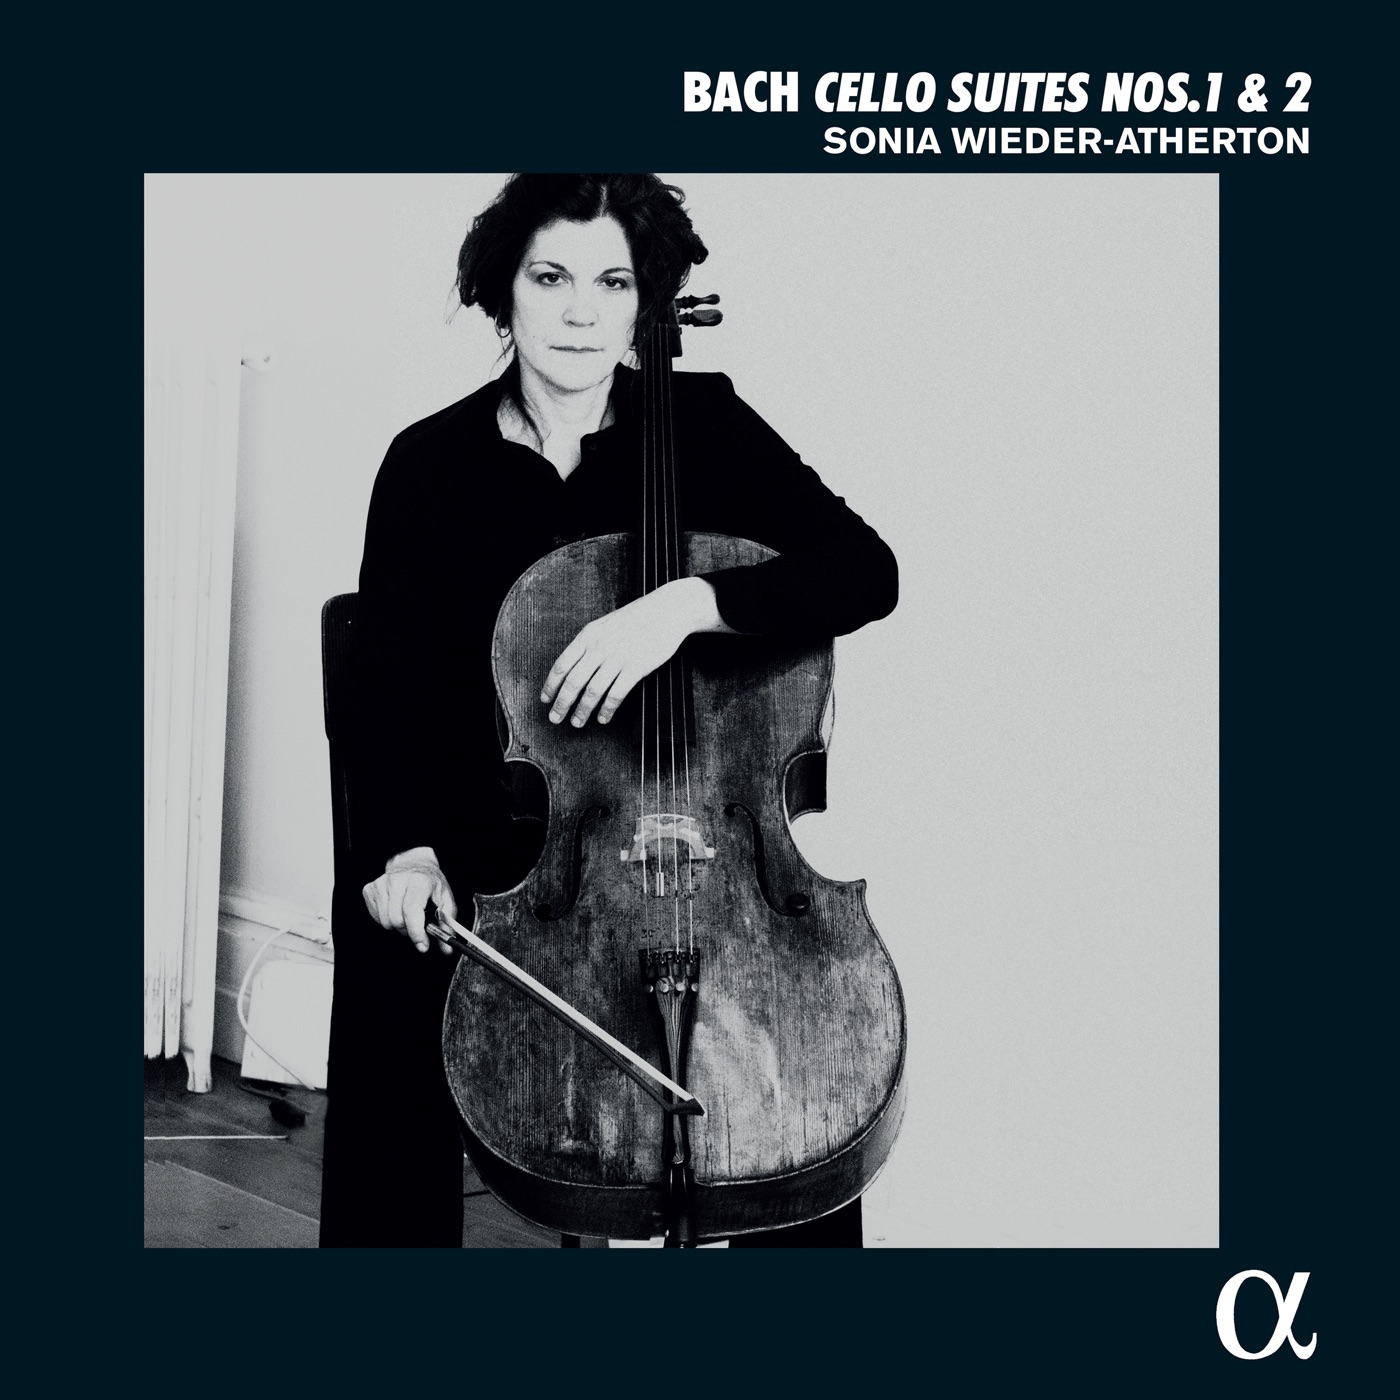 Bach: Cello Suites Nos. 1 & 2 by Sonia Wieder-Atherton, Johann Sebastian Bach